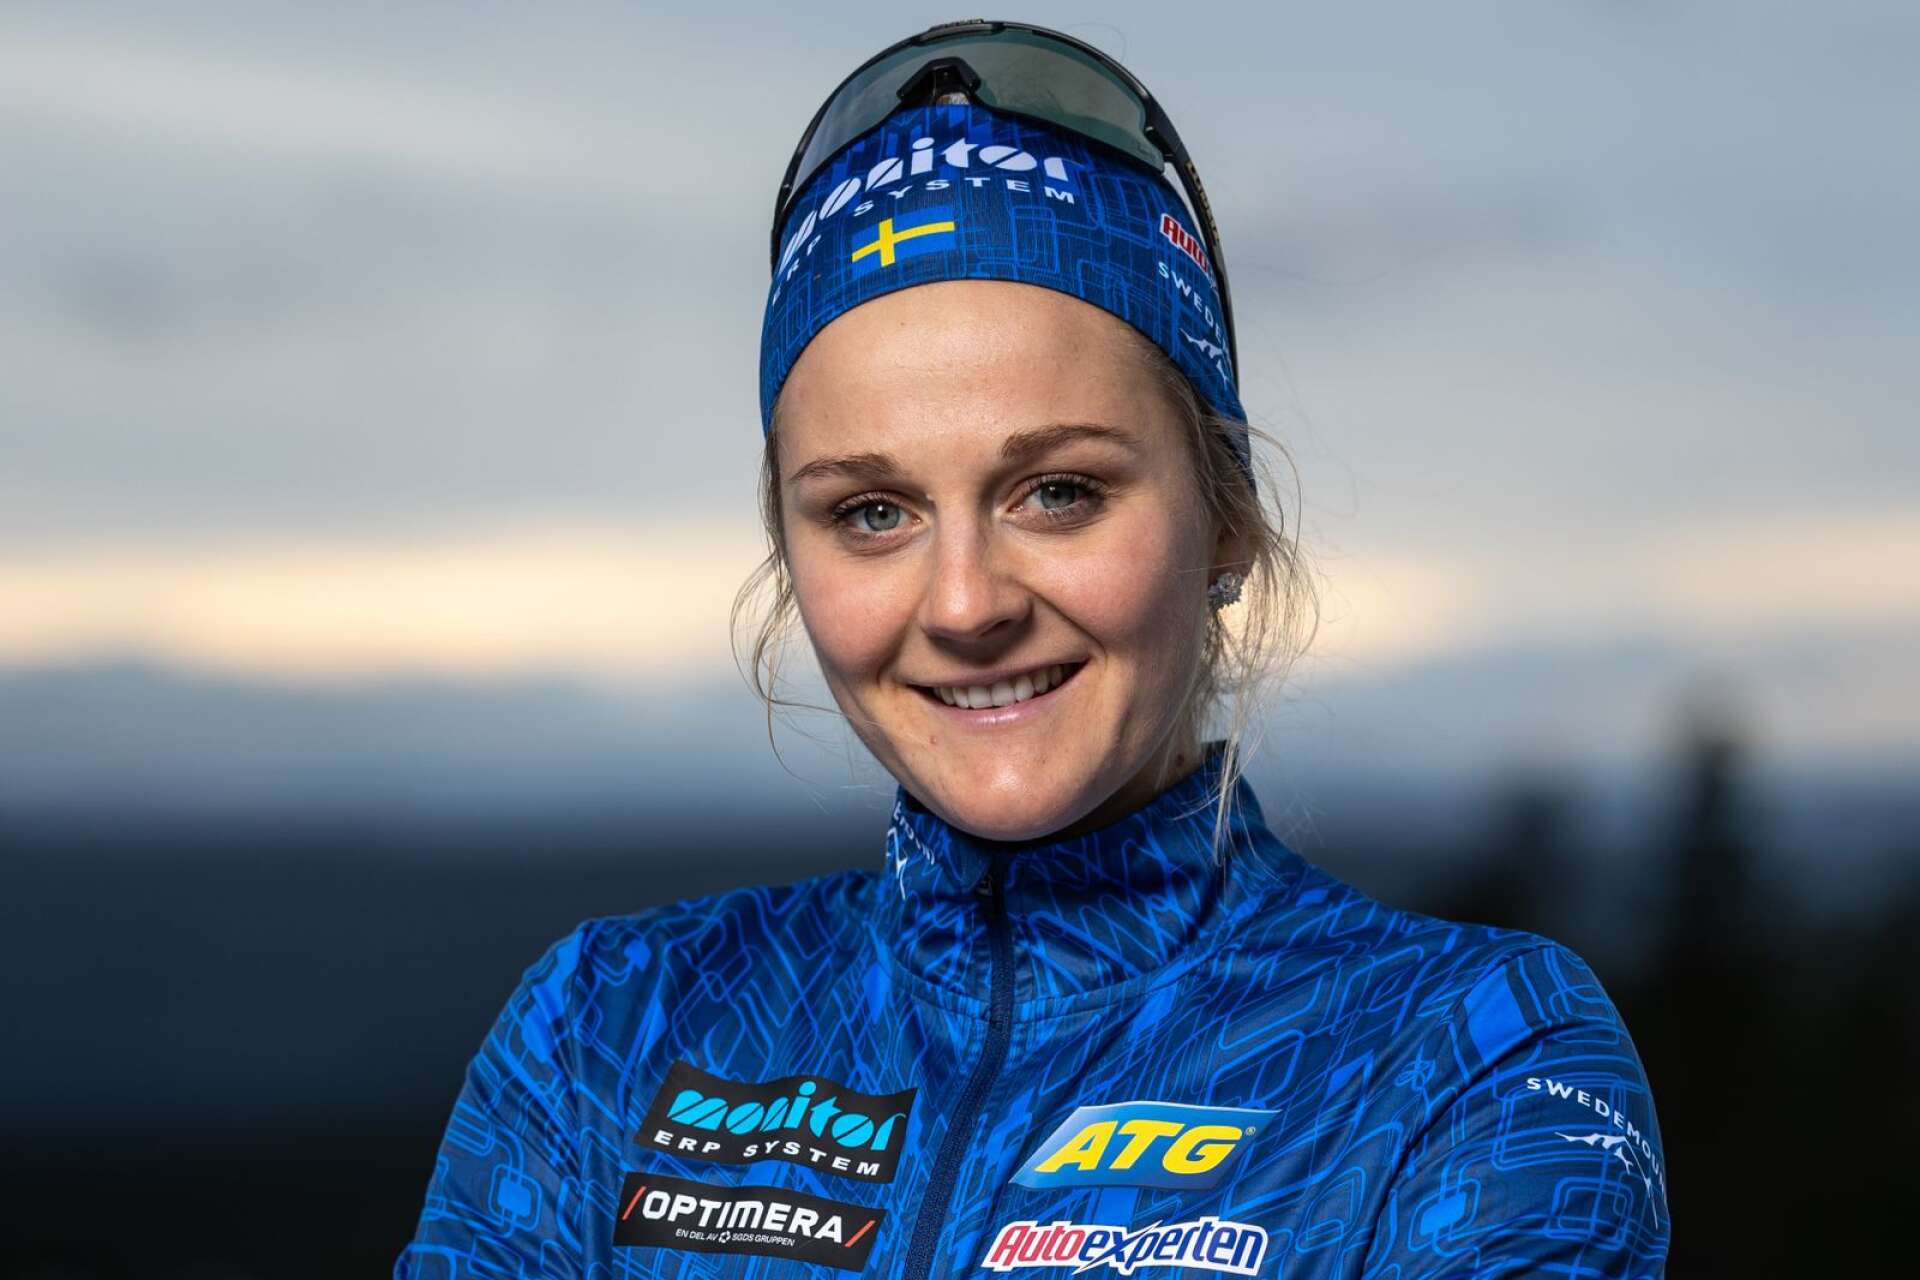 Tidigare världens bästa sprintskidåkare, numera skidskytten, Stina Nilsson är tillsammans med värmländske skidskytten Emil Nykvist.